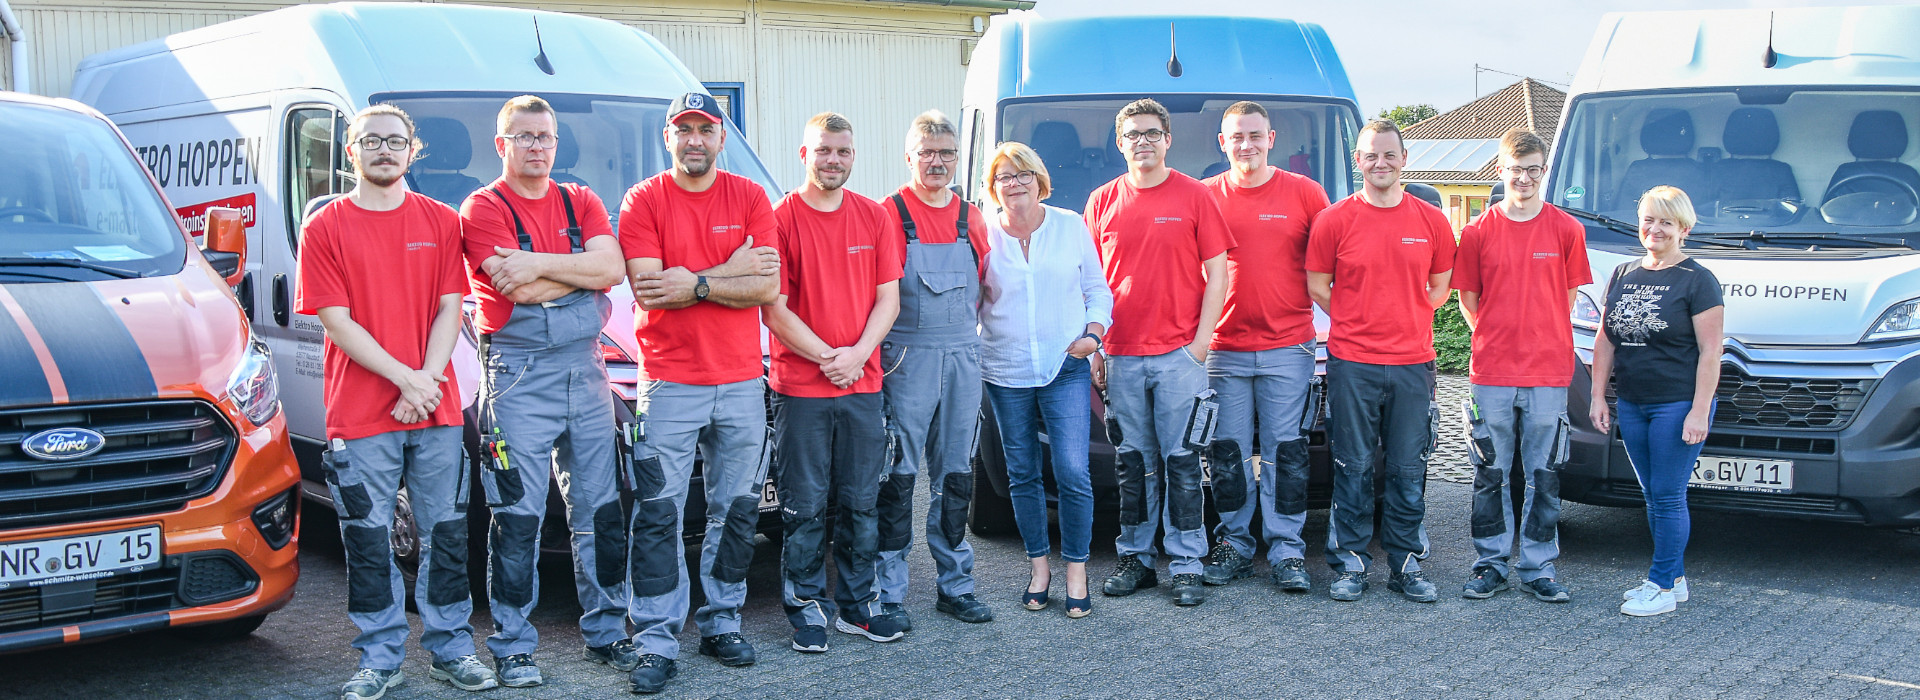 Team der Elektro Hoppen GmbH, bestehend aus 11 Mitarbeitenden, darunter 2 Frauen. Das Team steht vor den Firmenautos im Hof des Unternehmens.